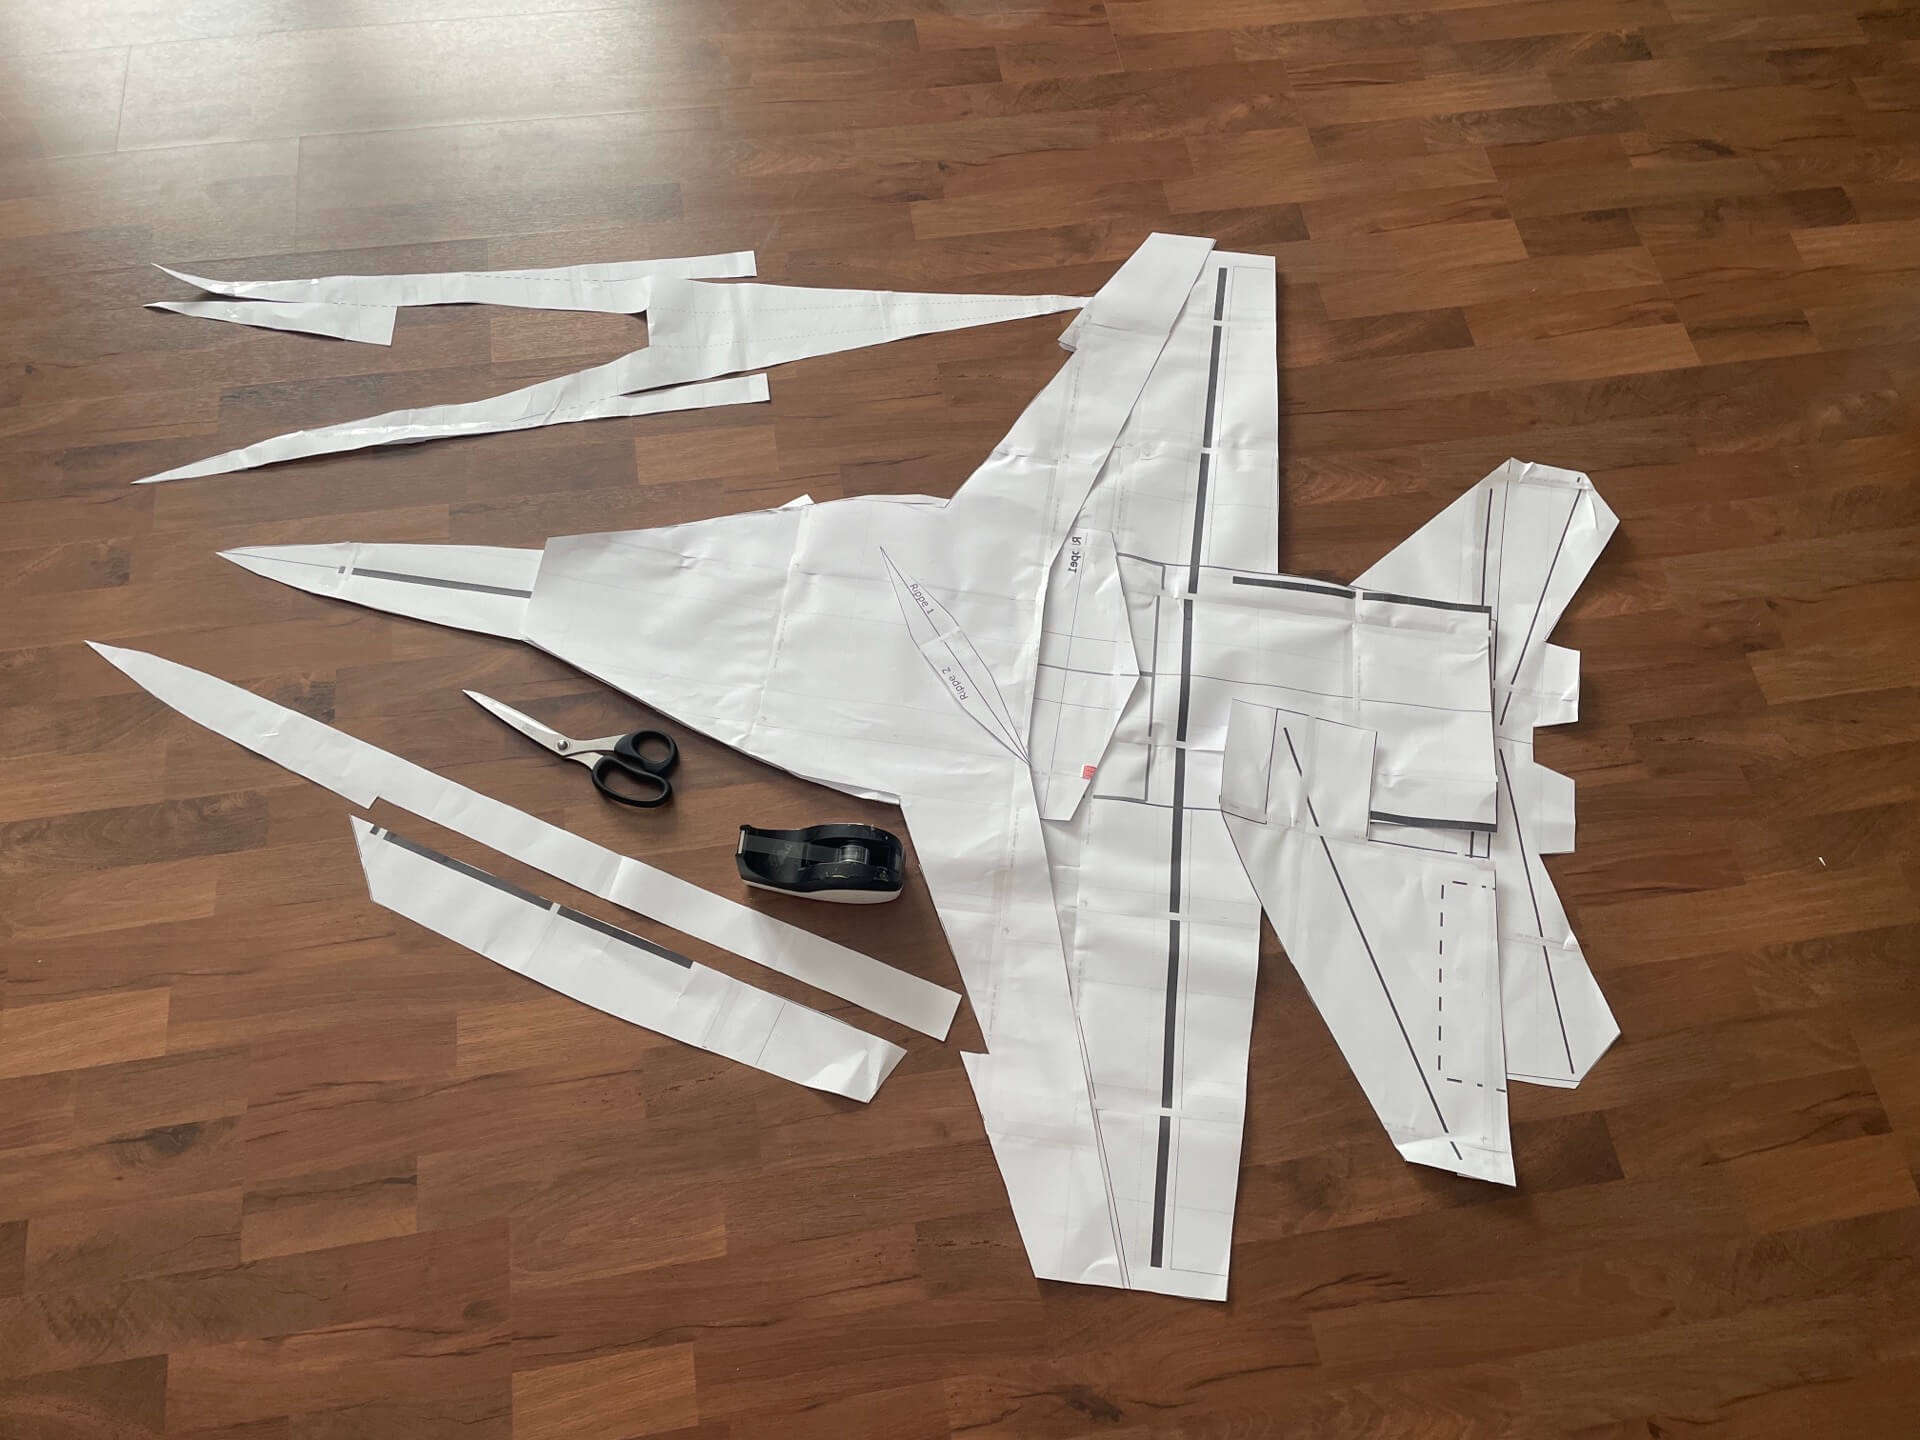 Der fertig ausgeschnittene Bauplan der F-18